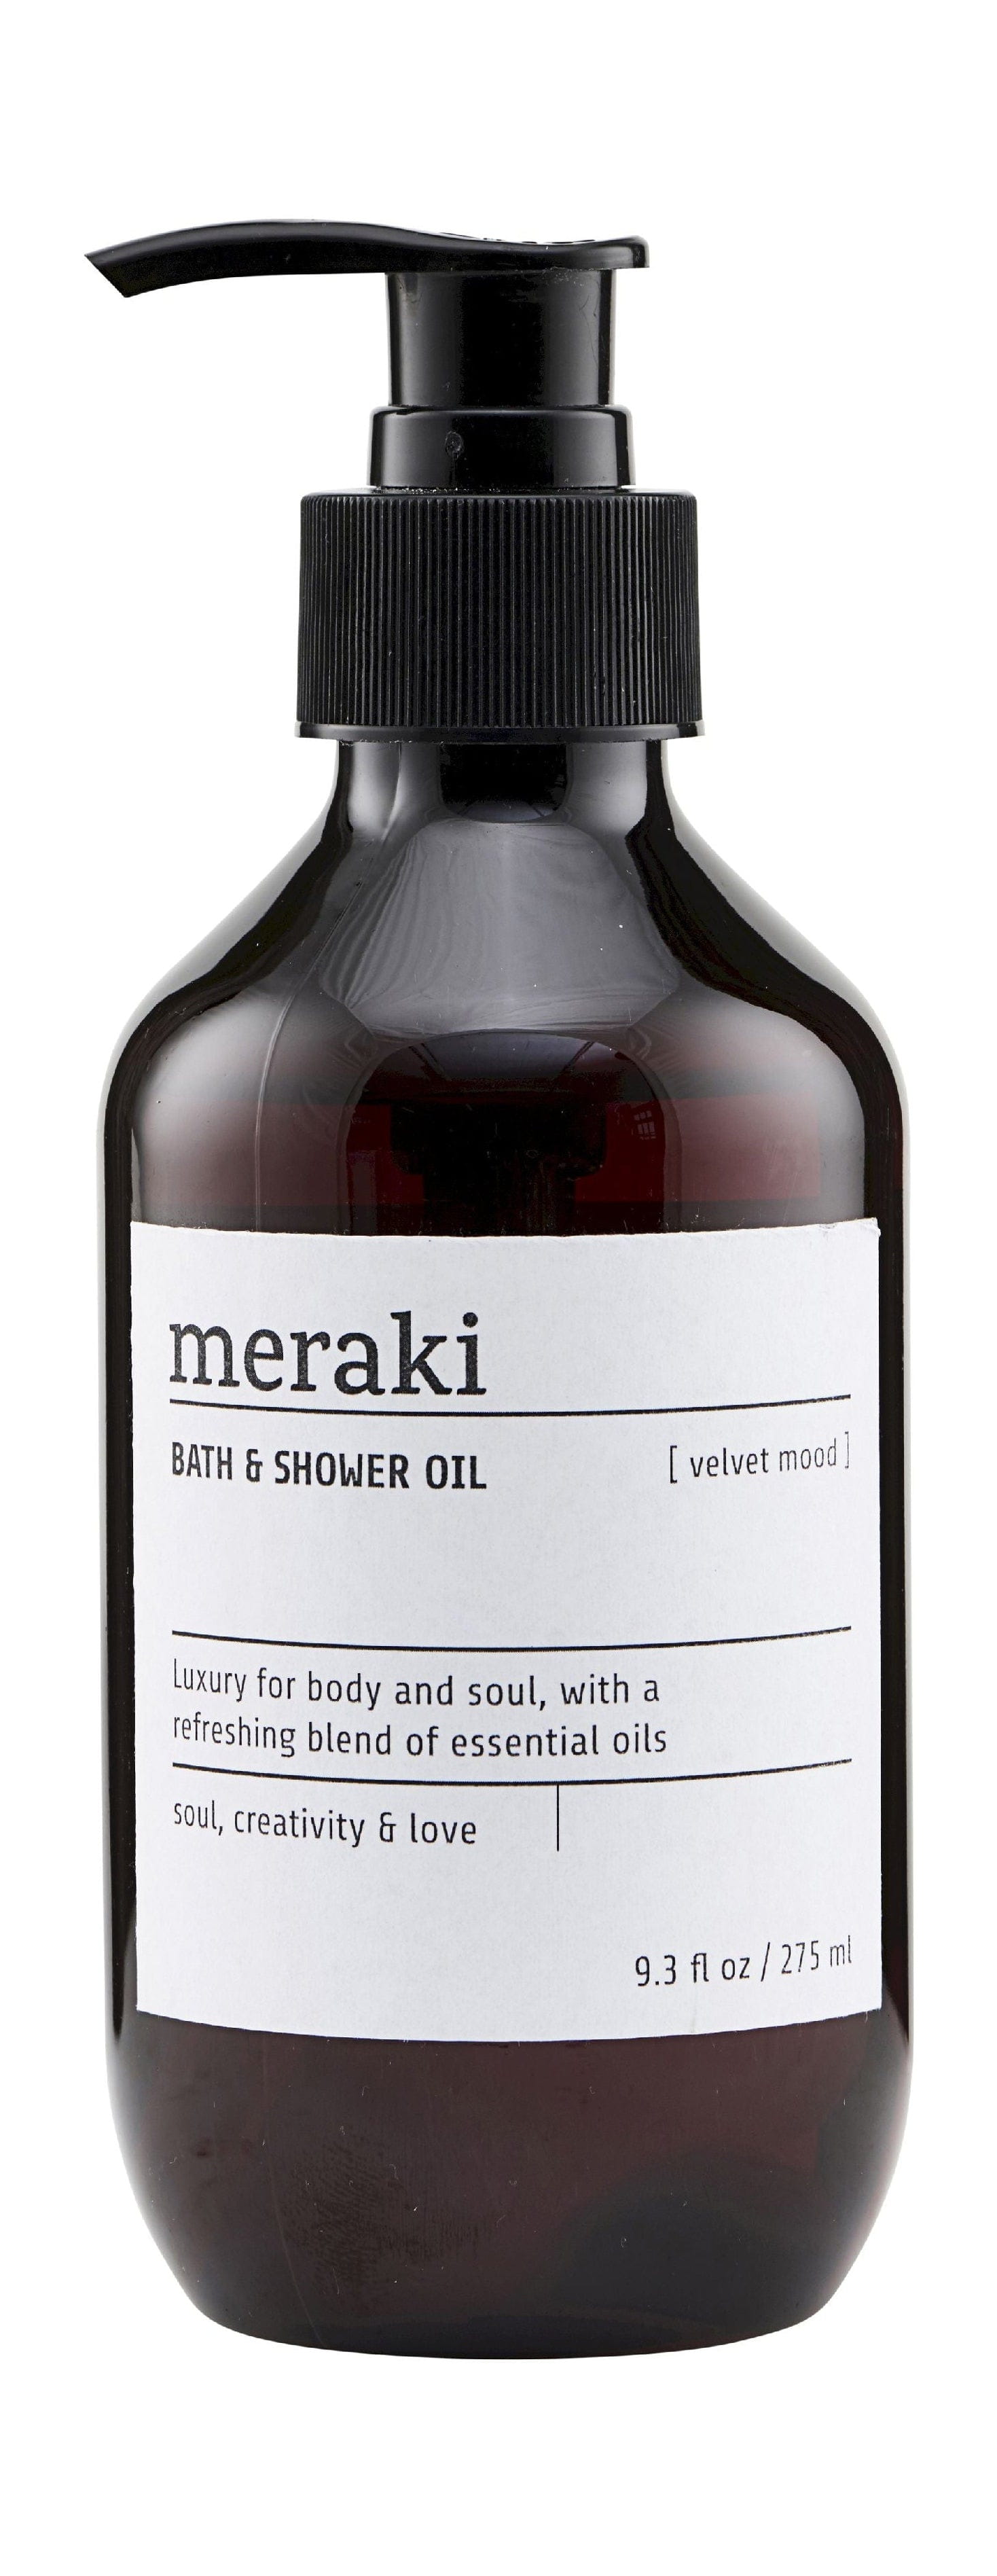 Aceite de baño y ducha de Meraki 275 ml, Estado de ánimo de terciopelo